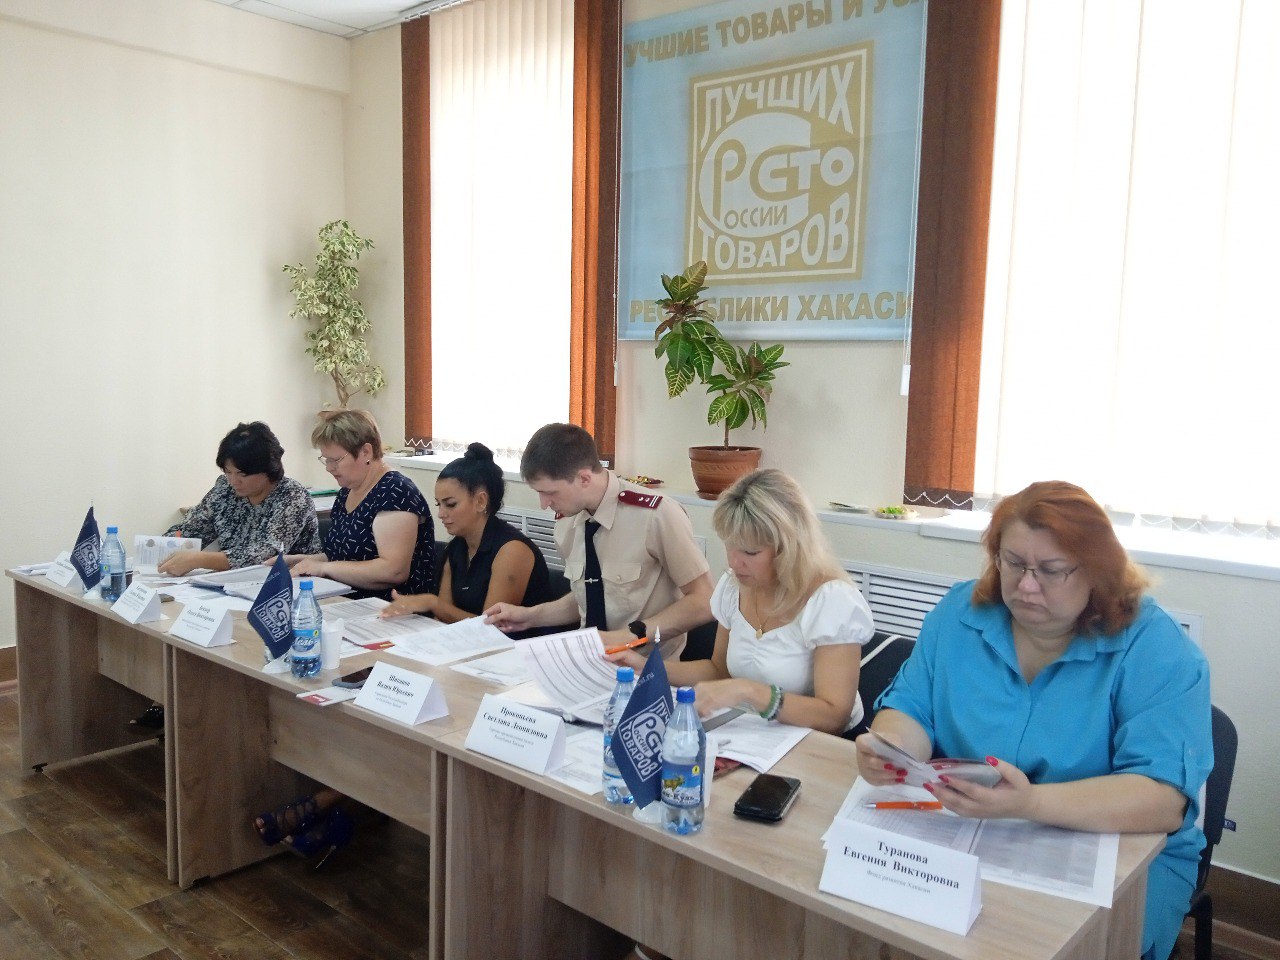 Товары производителей  Хакасии и юга Красноярского края оценили эксперты